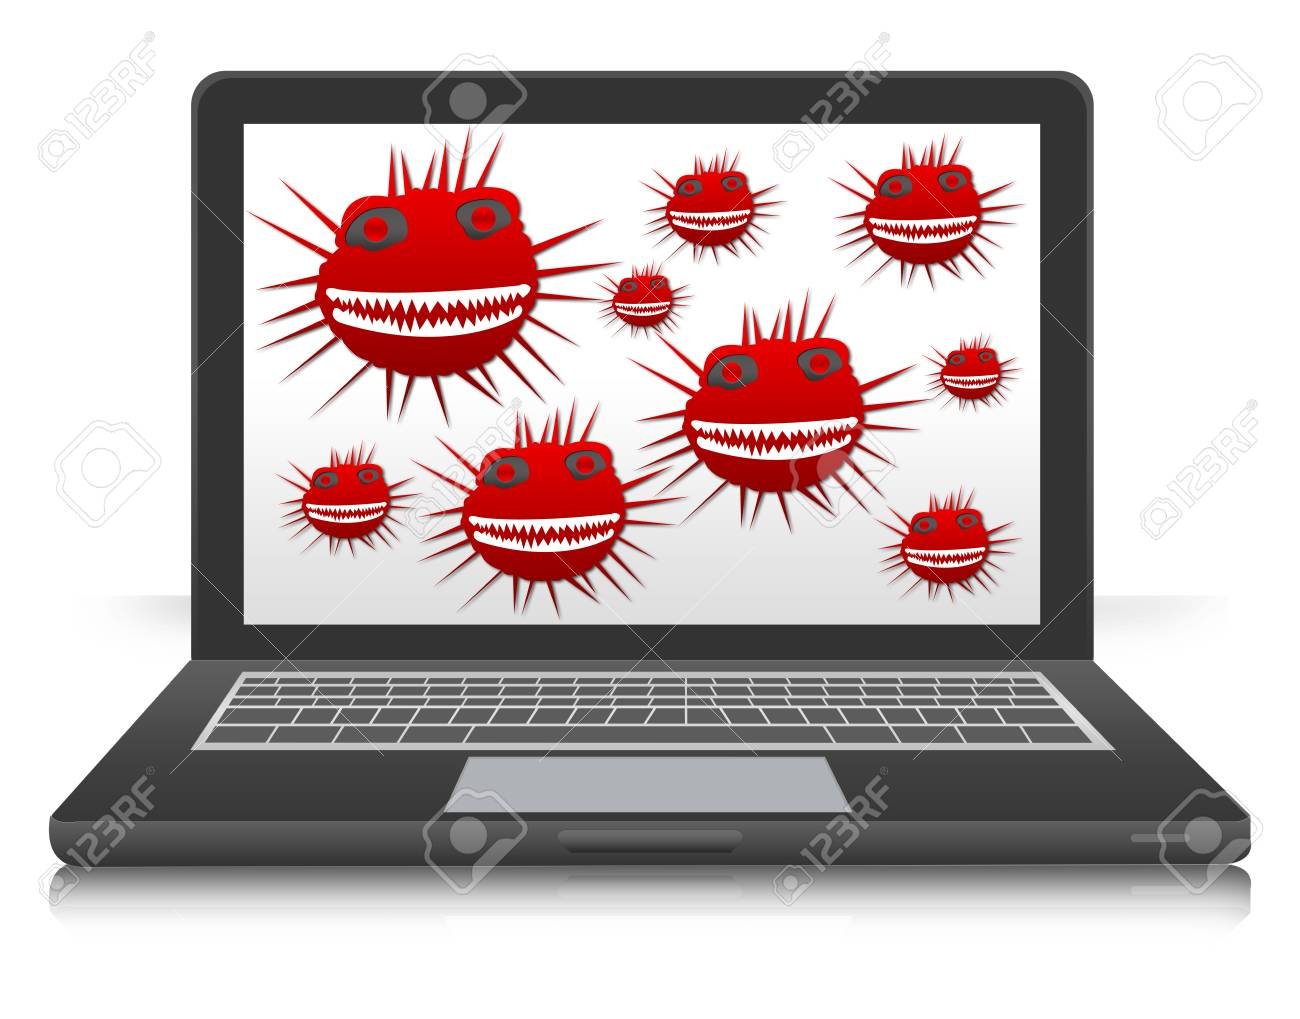 Полный компьютер вирусов. Компьютерные вирусы. Вирус на компьютере. Компьютерные вирусы картинки. Компьютерный вирус иллюстрация.